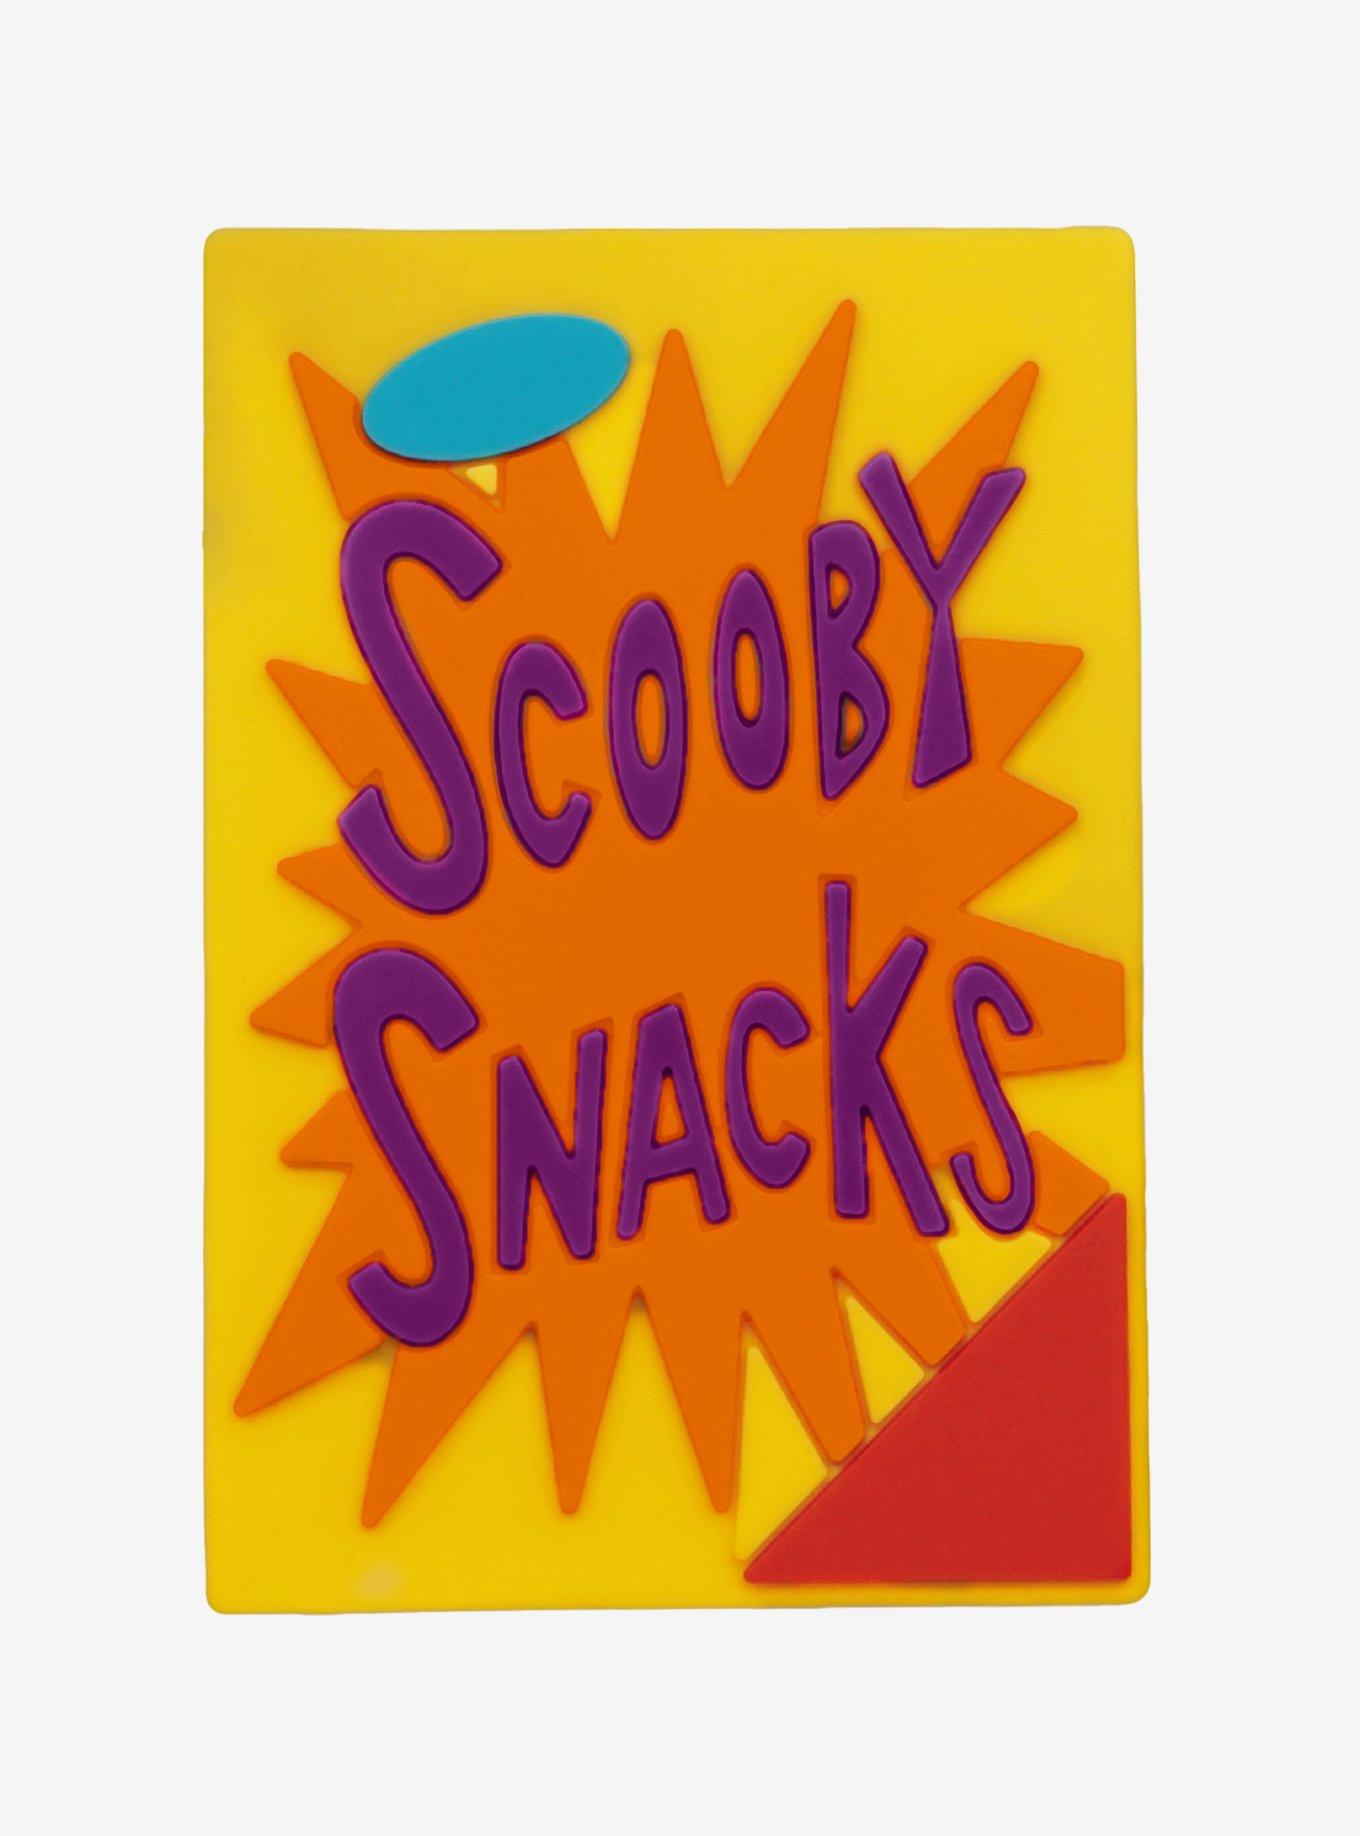 scooby snacks box